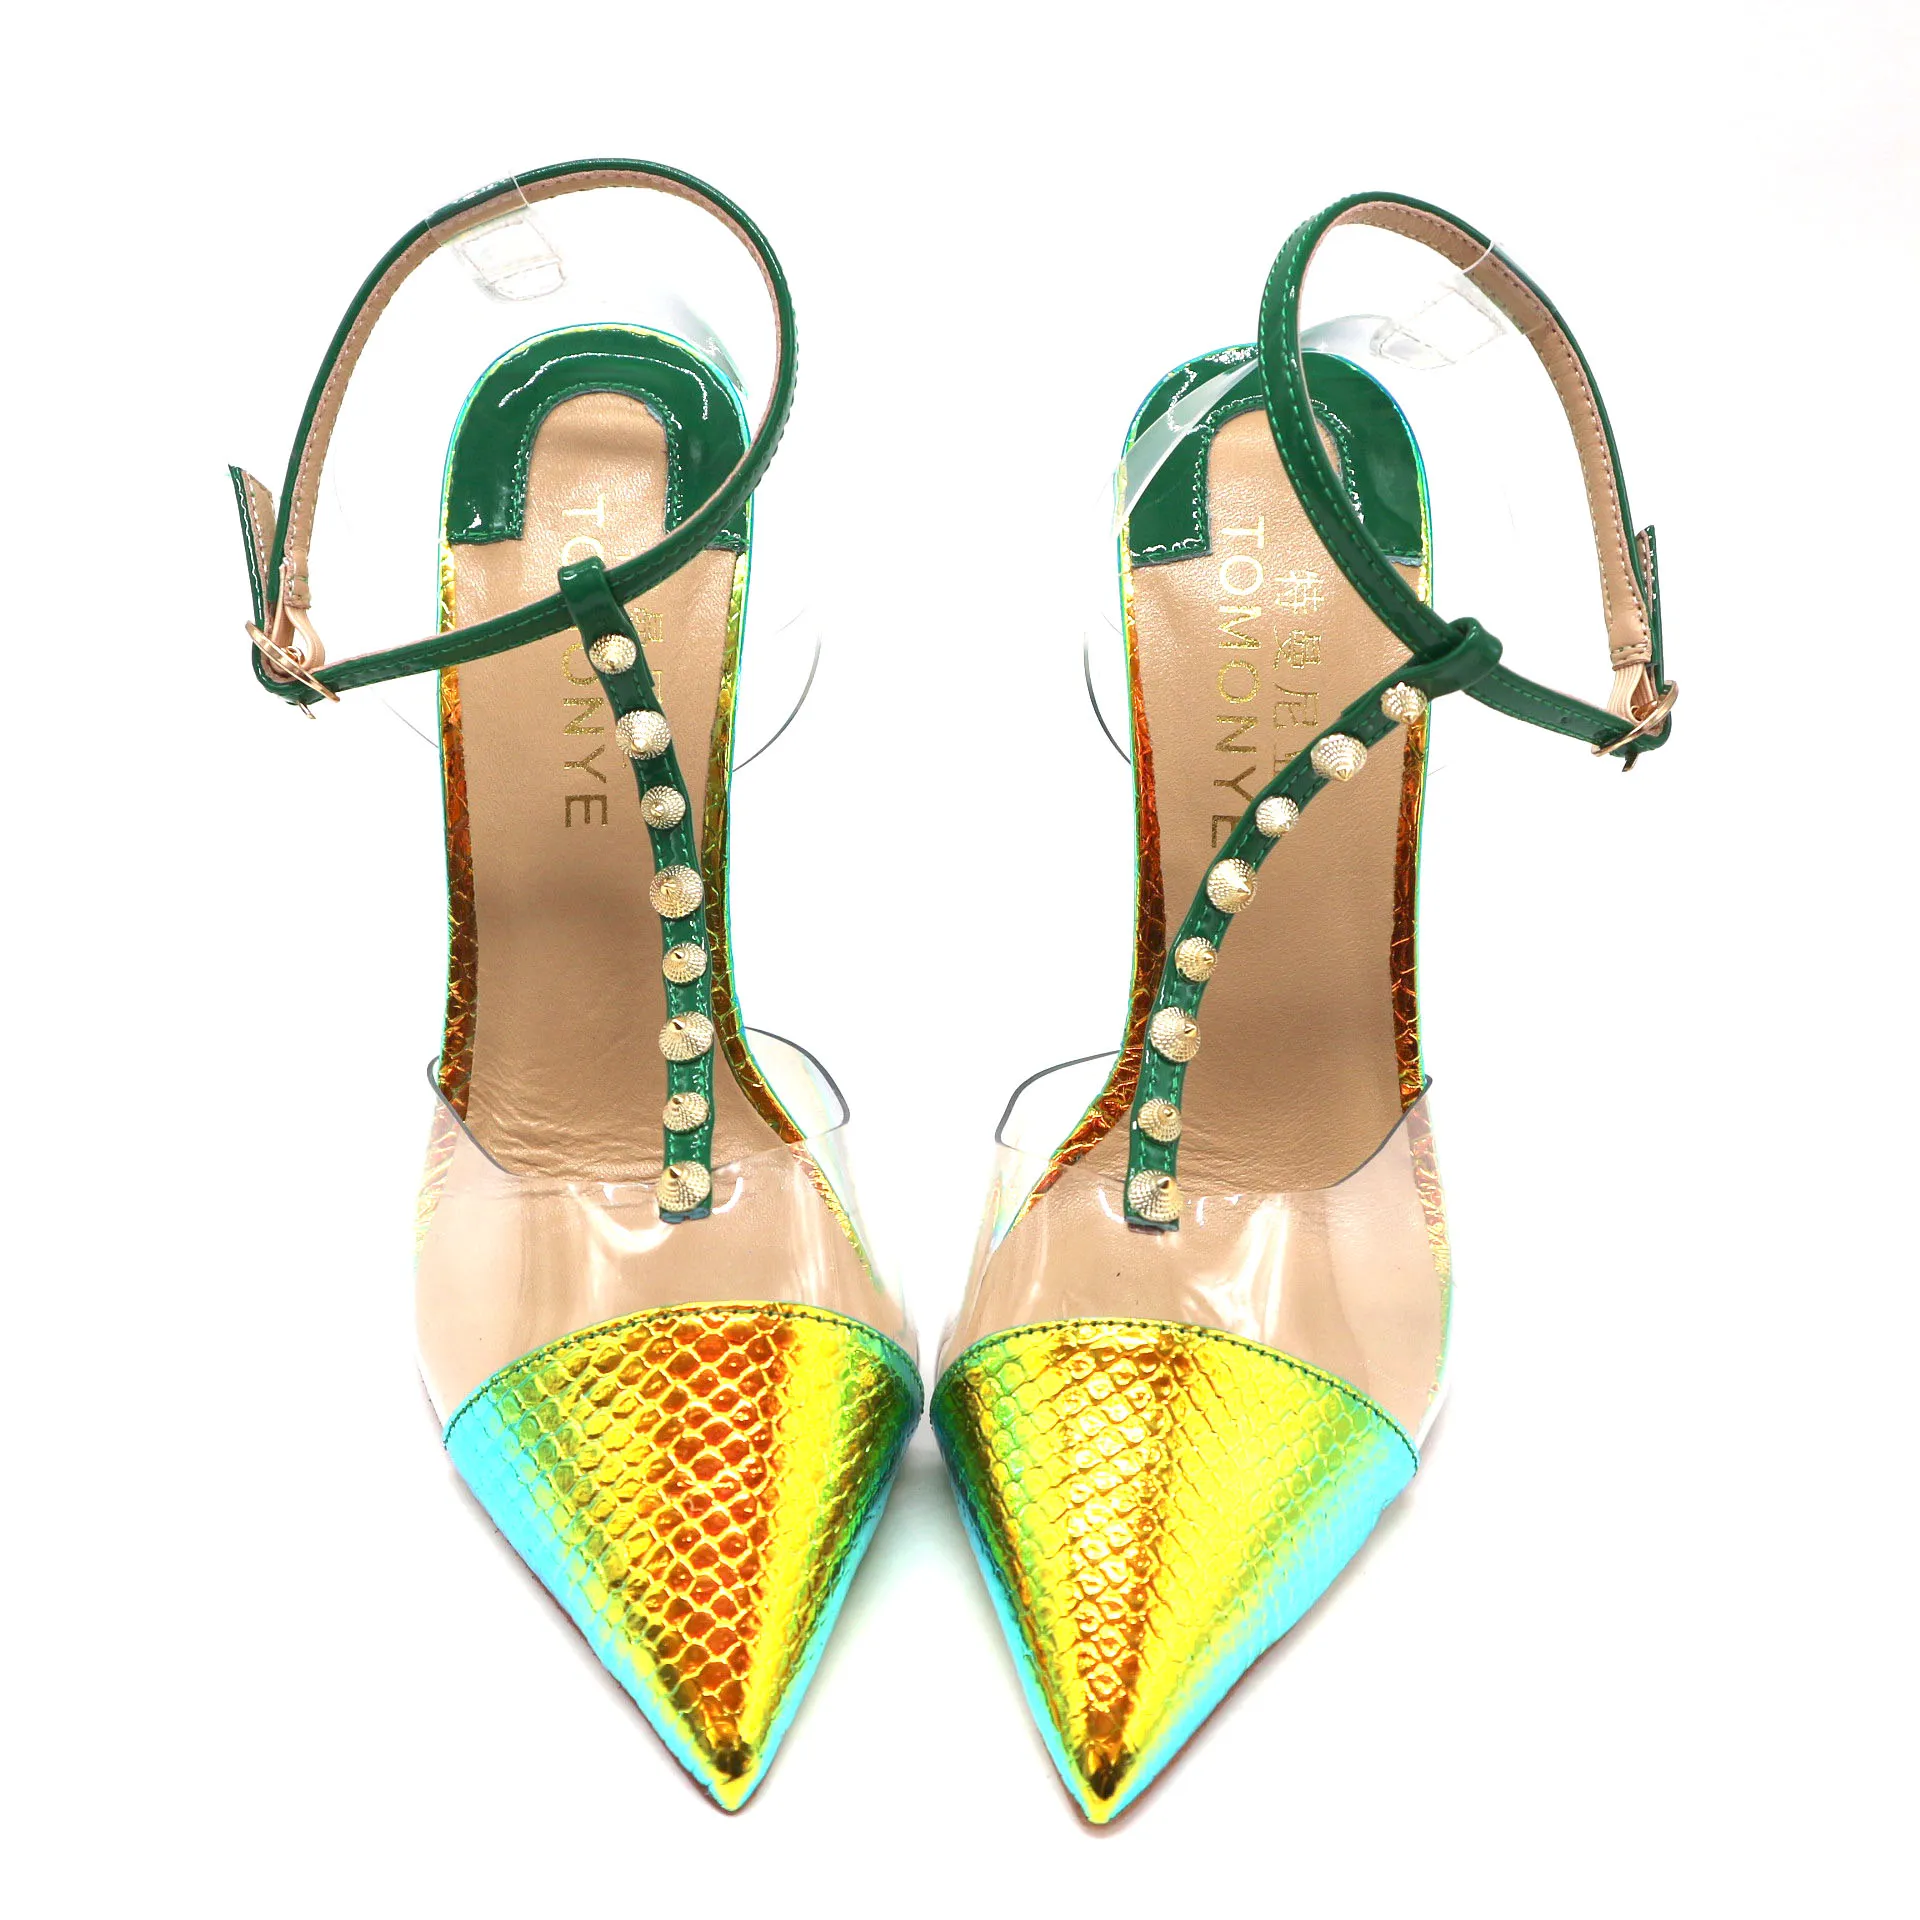 Freier Verschiffen Art und Weise Designer Pumpen Spitze Zehen Schuhe gelb grüne Schlange Python T Band mit Spike Knoechelriemchen Frauen Dame weiblichen Sommer